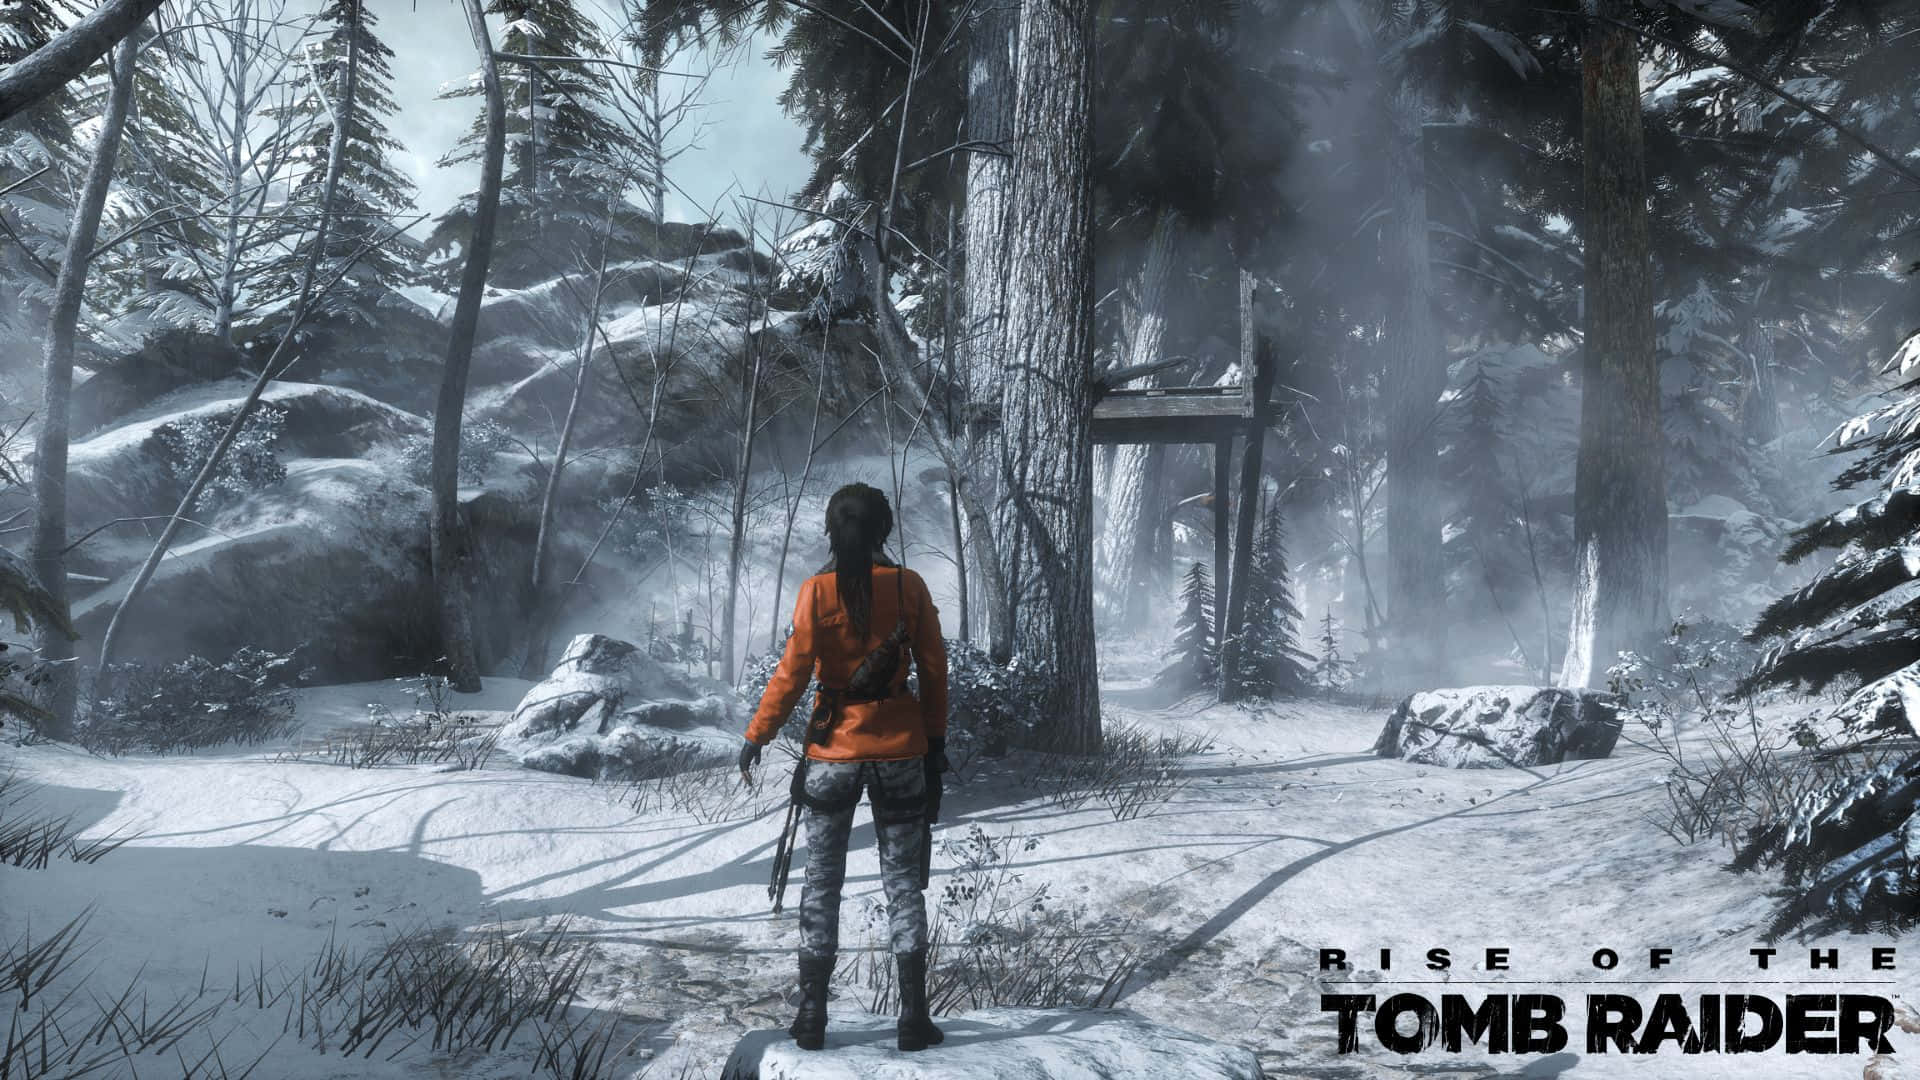 Sfondobosco Nevoso Rise Of The Tomb Raider In 1080p